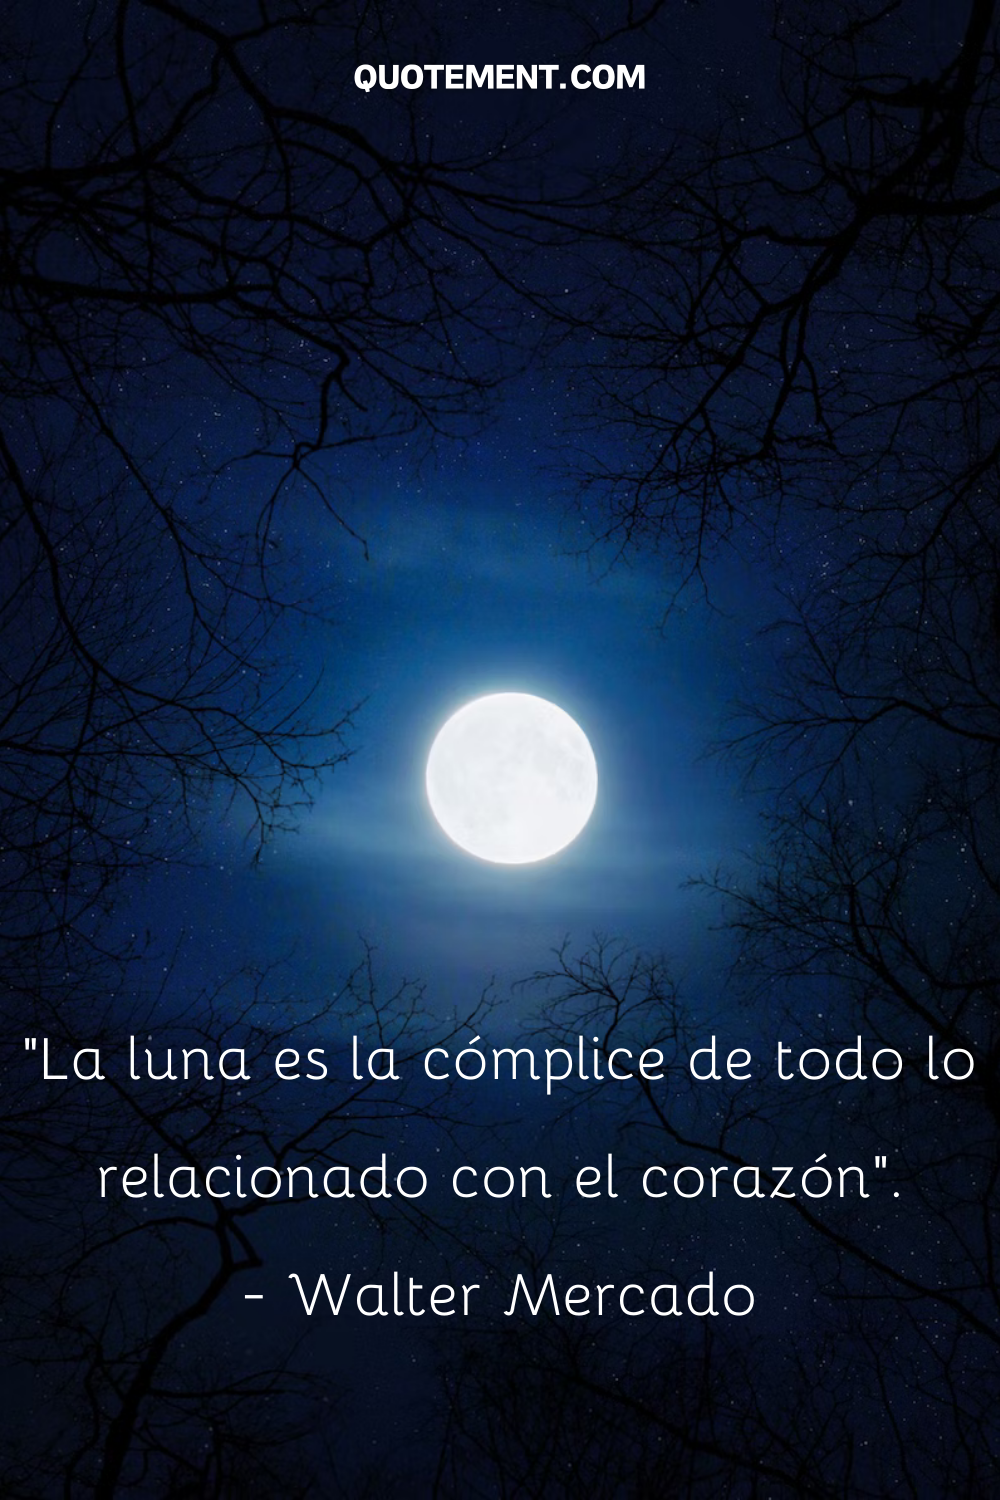 "La luna es la cómplice de todo lo relacionado con el corazón". - Walter Mercado